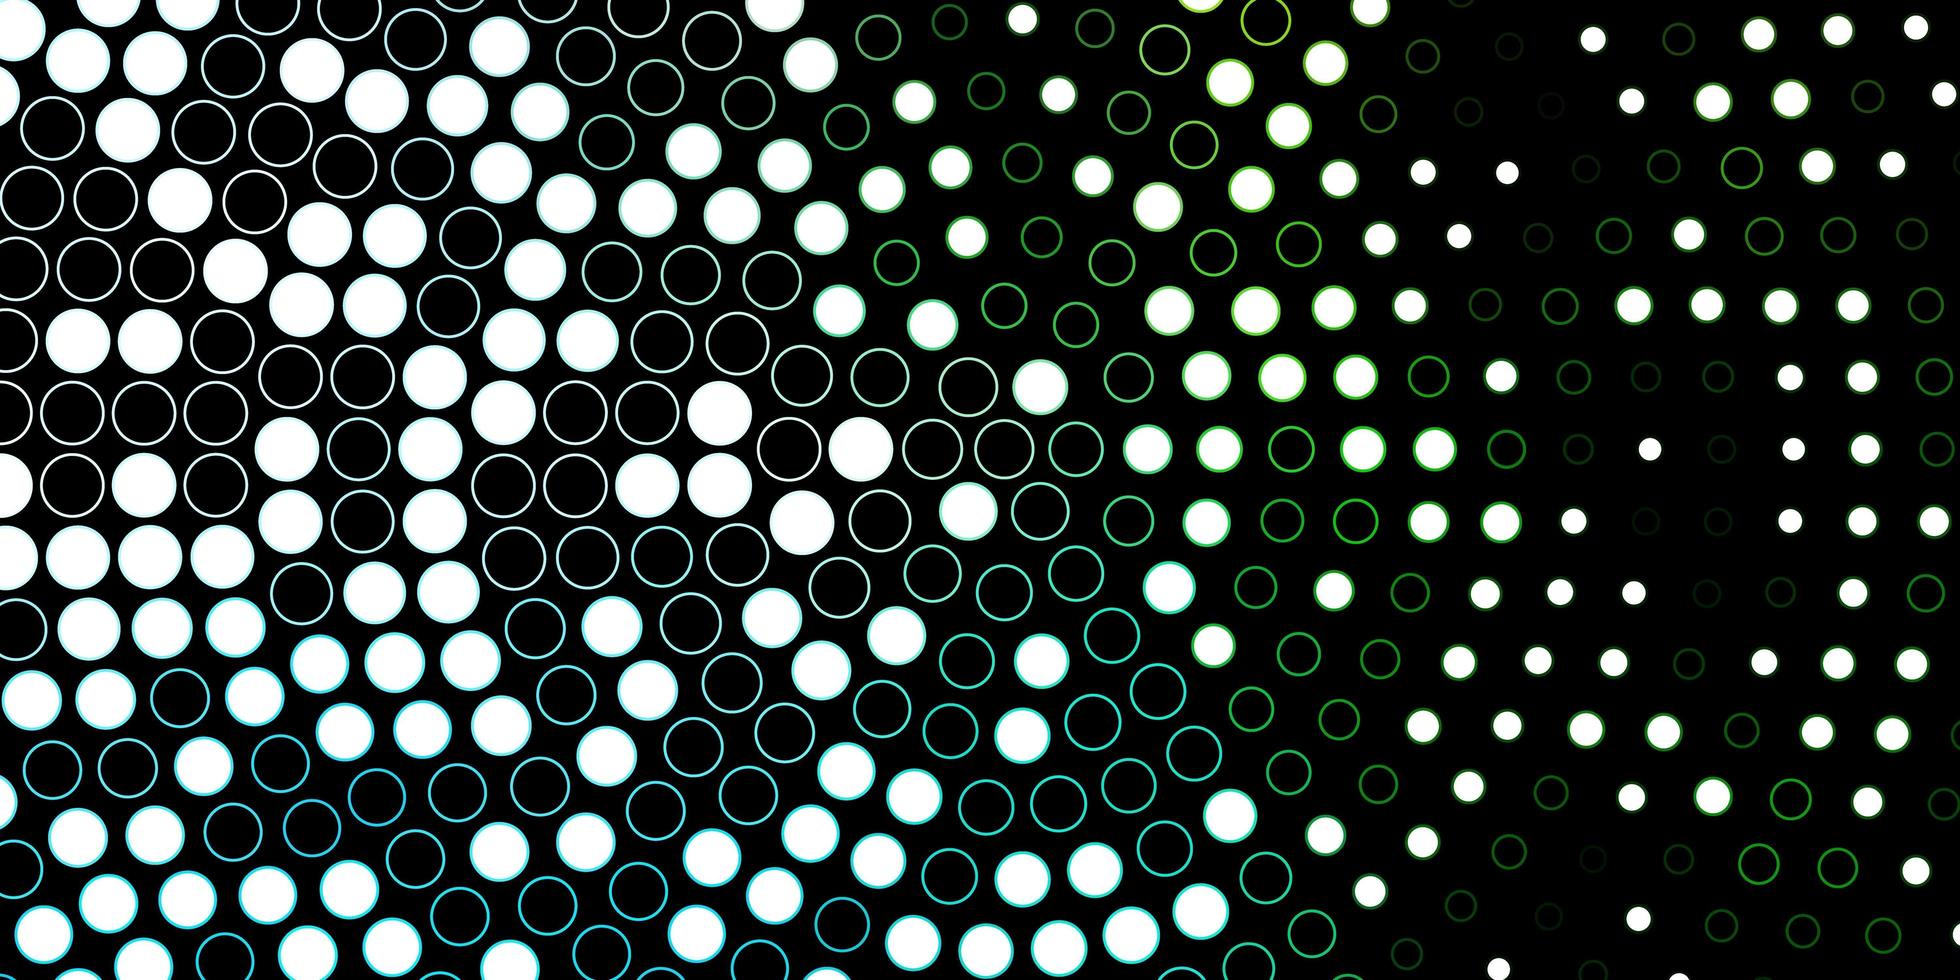 mörkblått, grönt vektormönster med cirklar. vektor